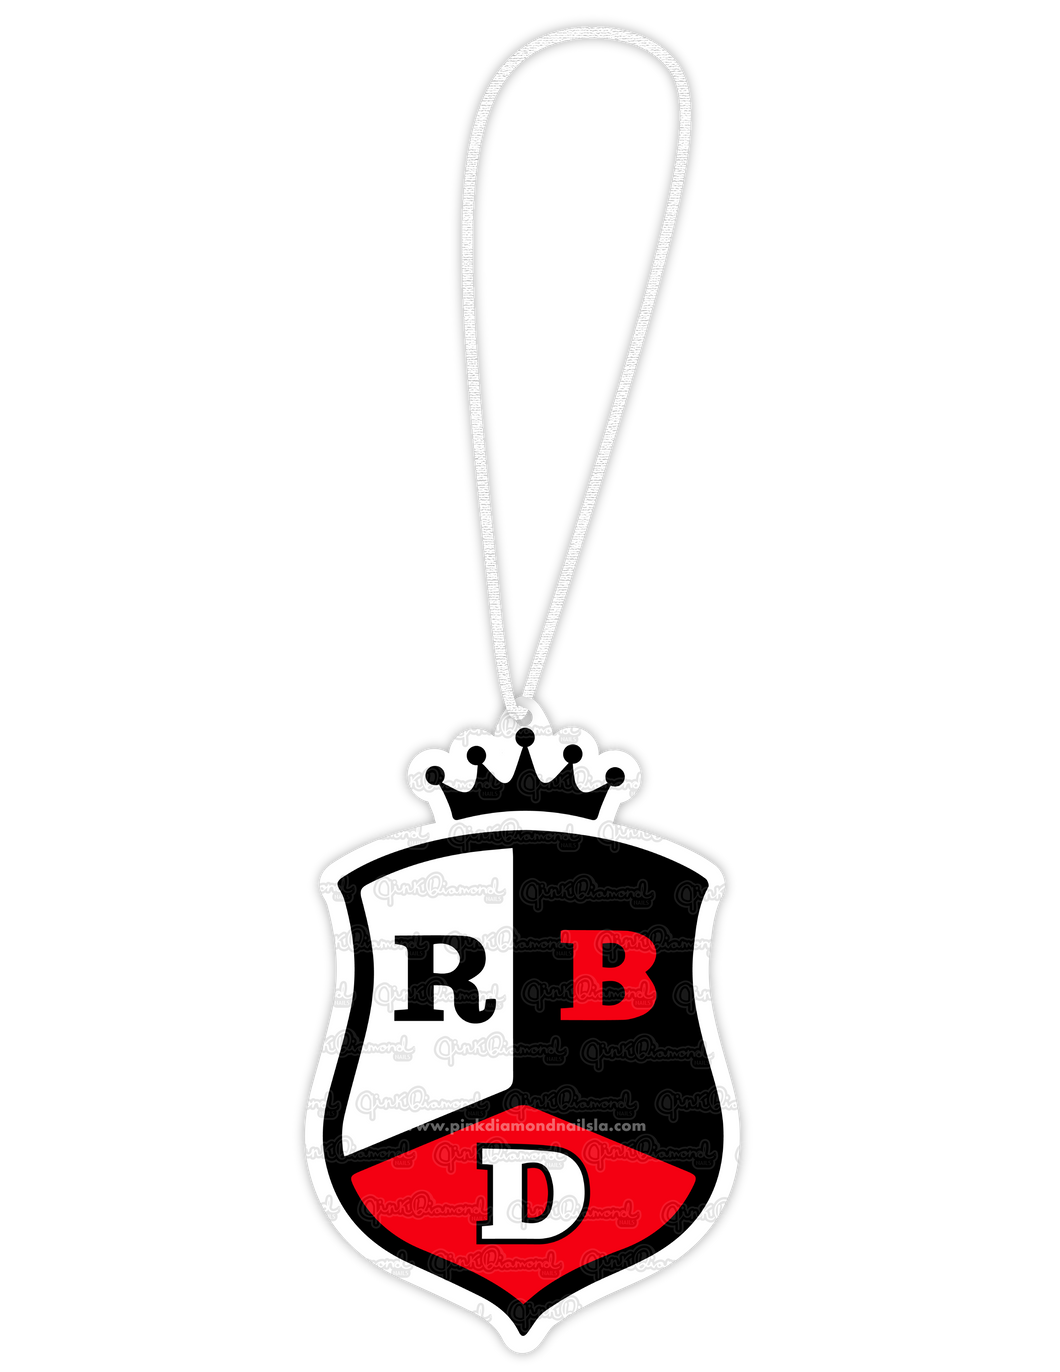 RBD Rebelde - Hangable ornaments